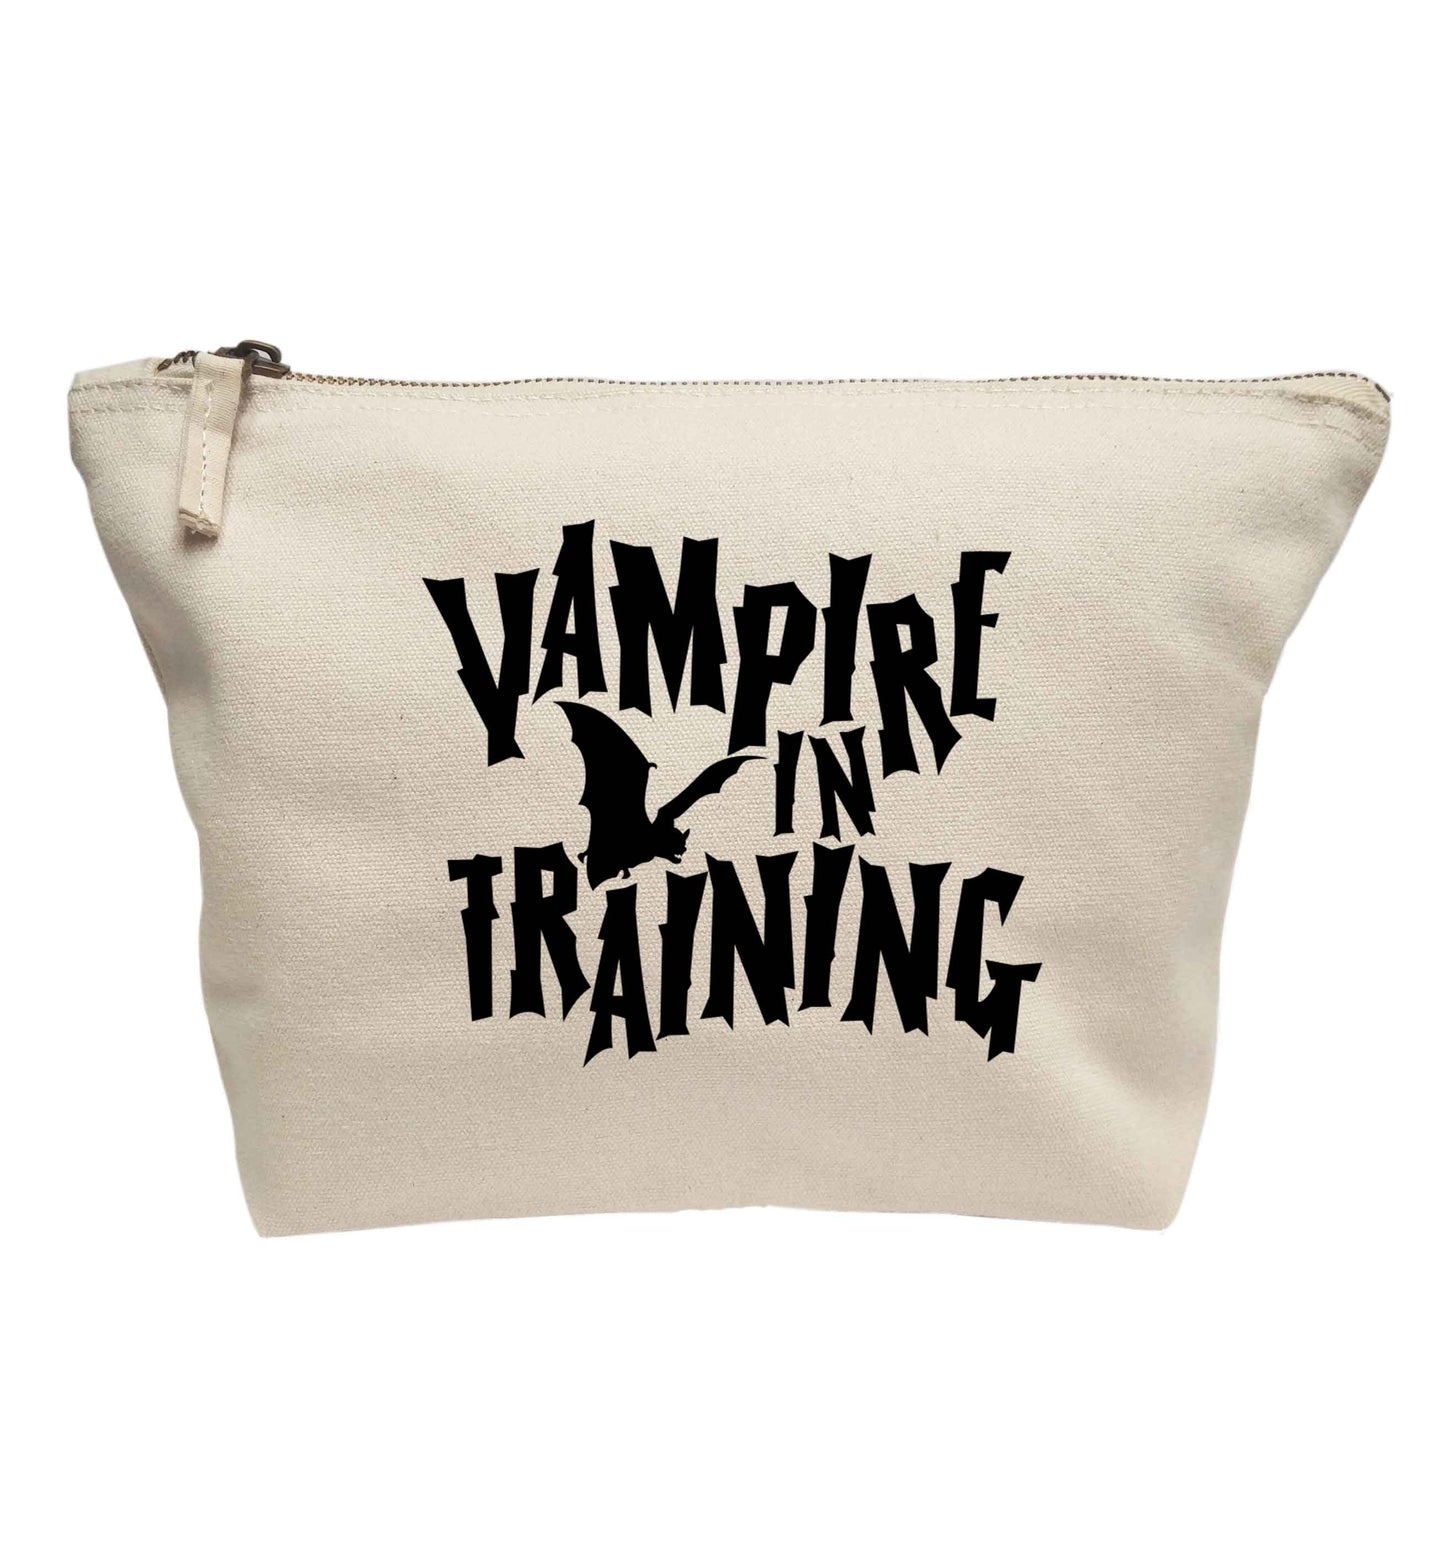 Vampire in training | Makeup / wash bag